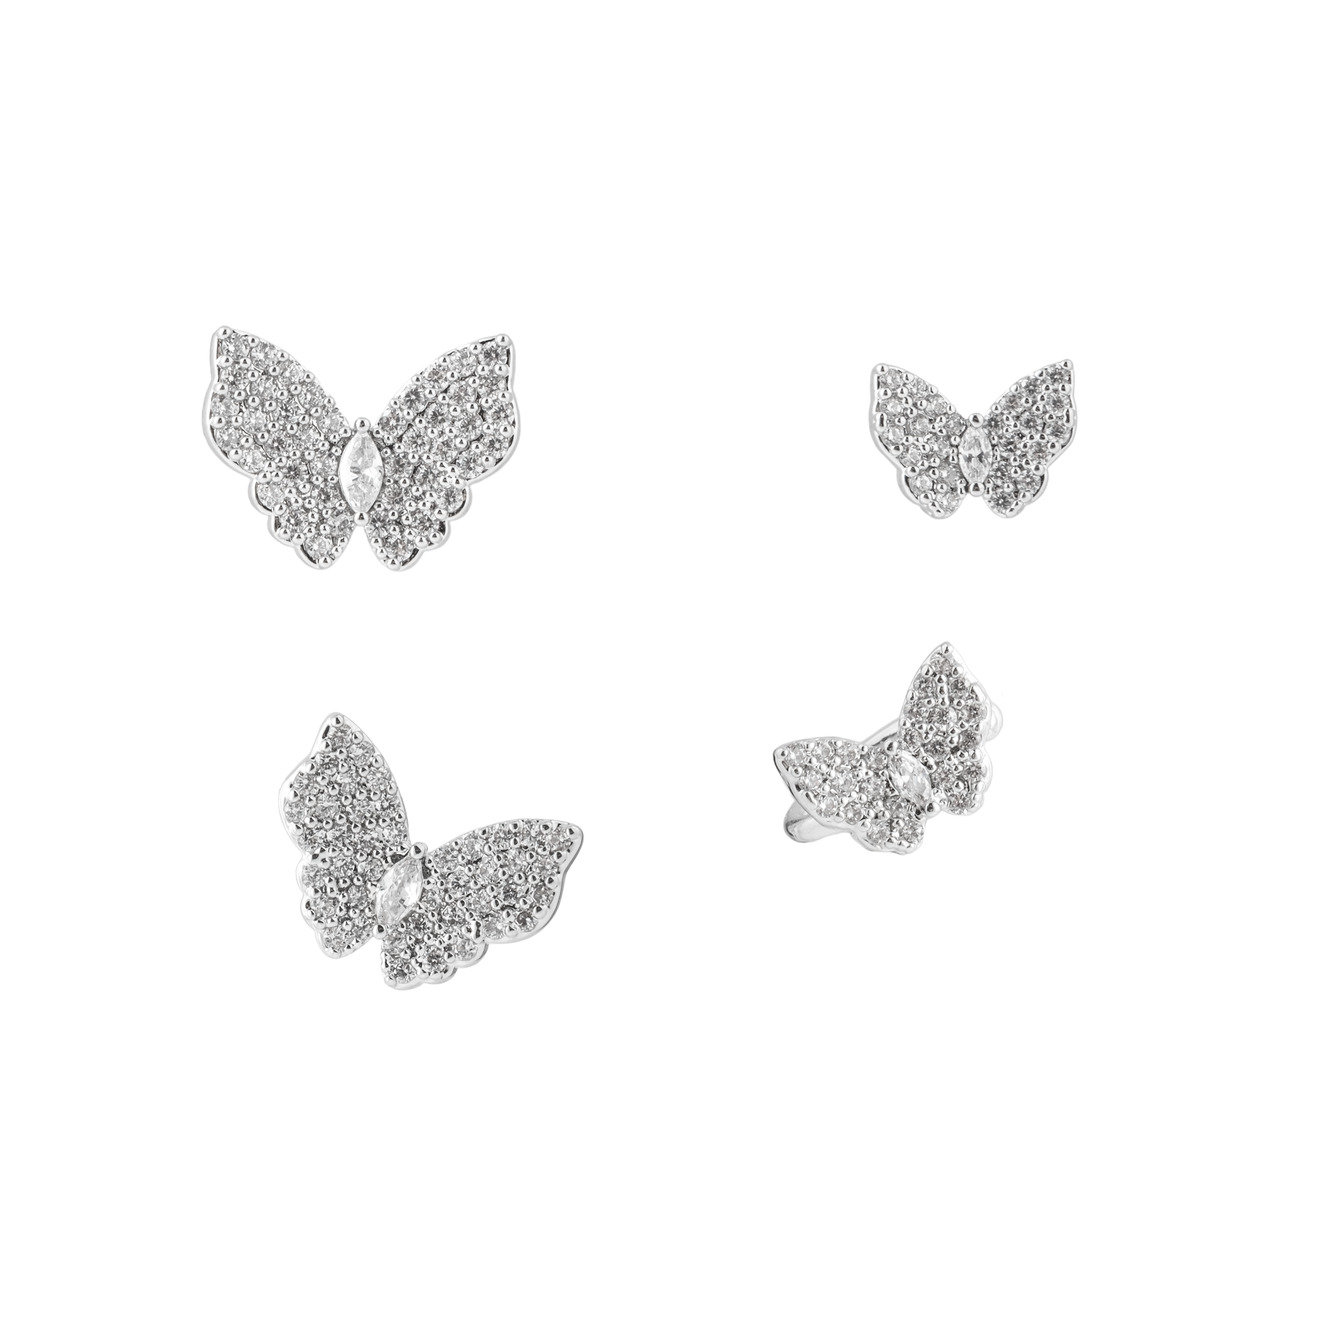 Herald Percy Серебристый сет серег и каффов с бабочками herald percy биколорный сет колец с кристаллами